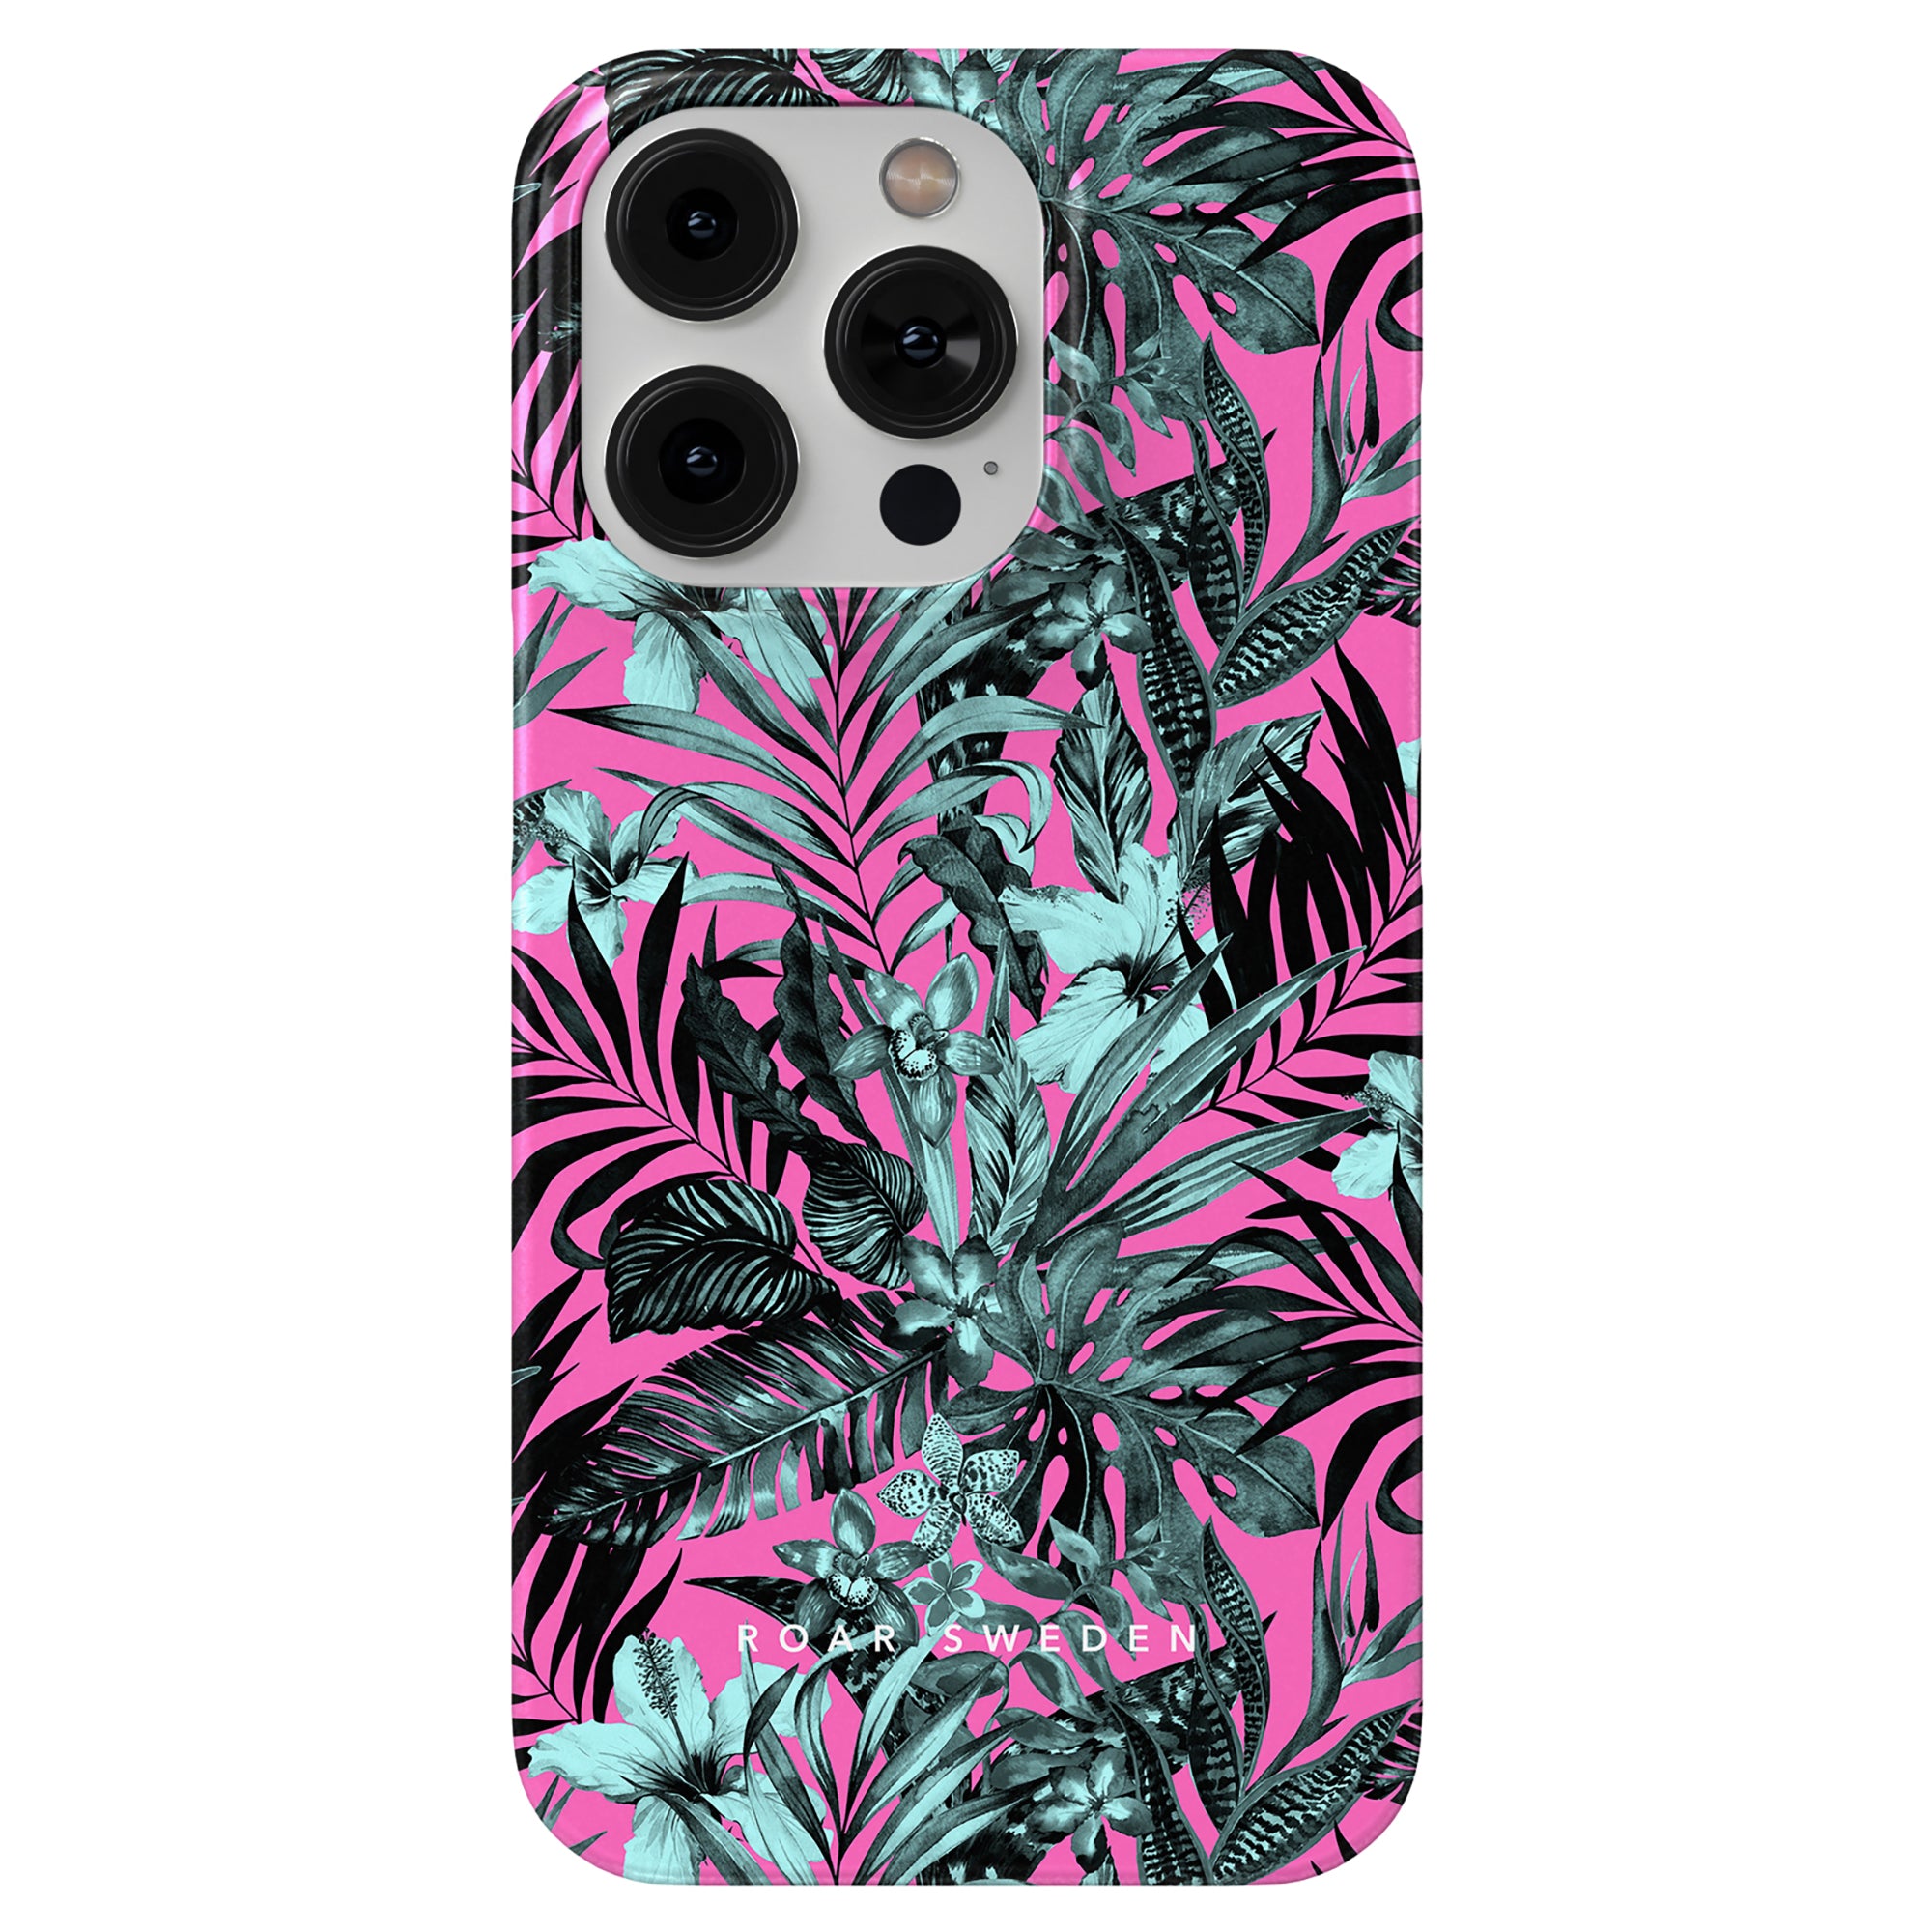 En Pink Jungle mobilskal med tropiska blad.